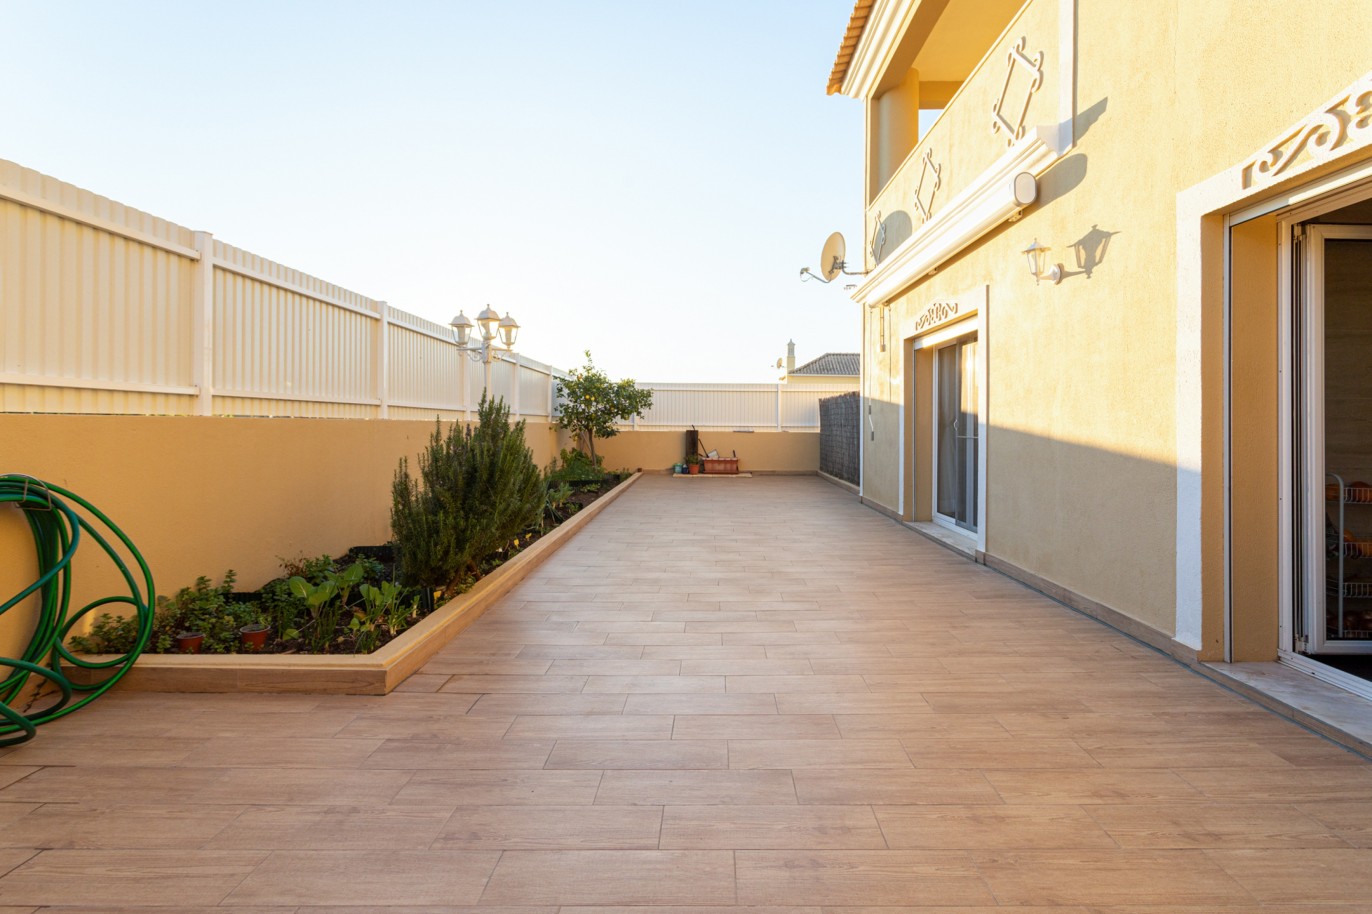 Villa de 4 dormitorios en zona de prestigio, en venta en Almancil, Algarve_217671